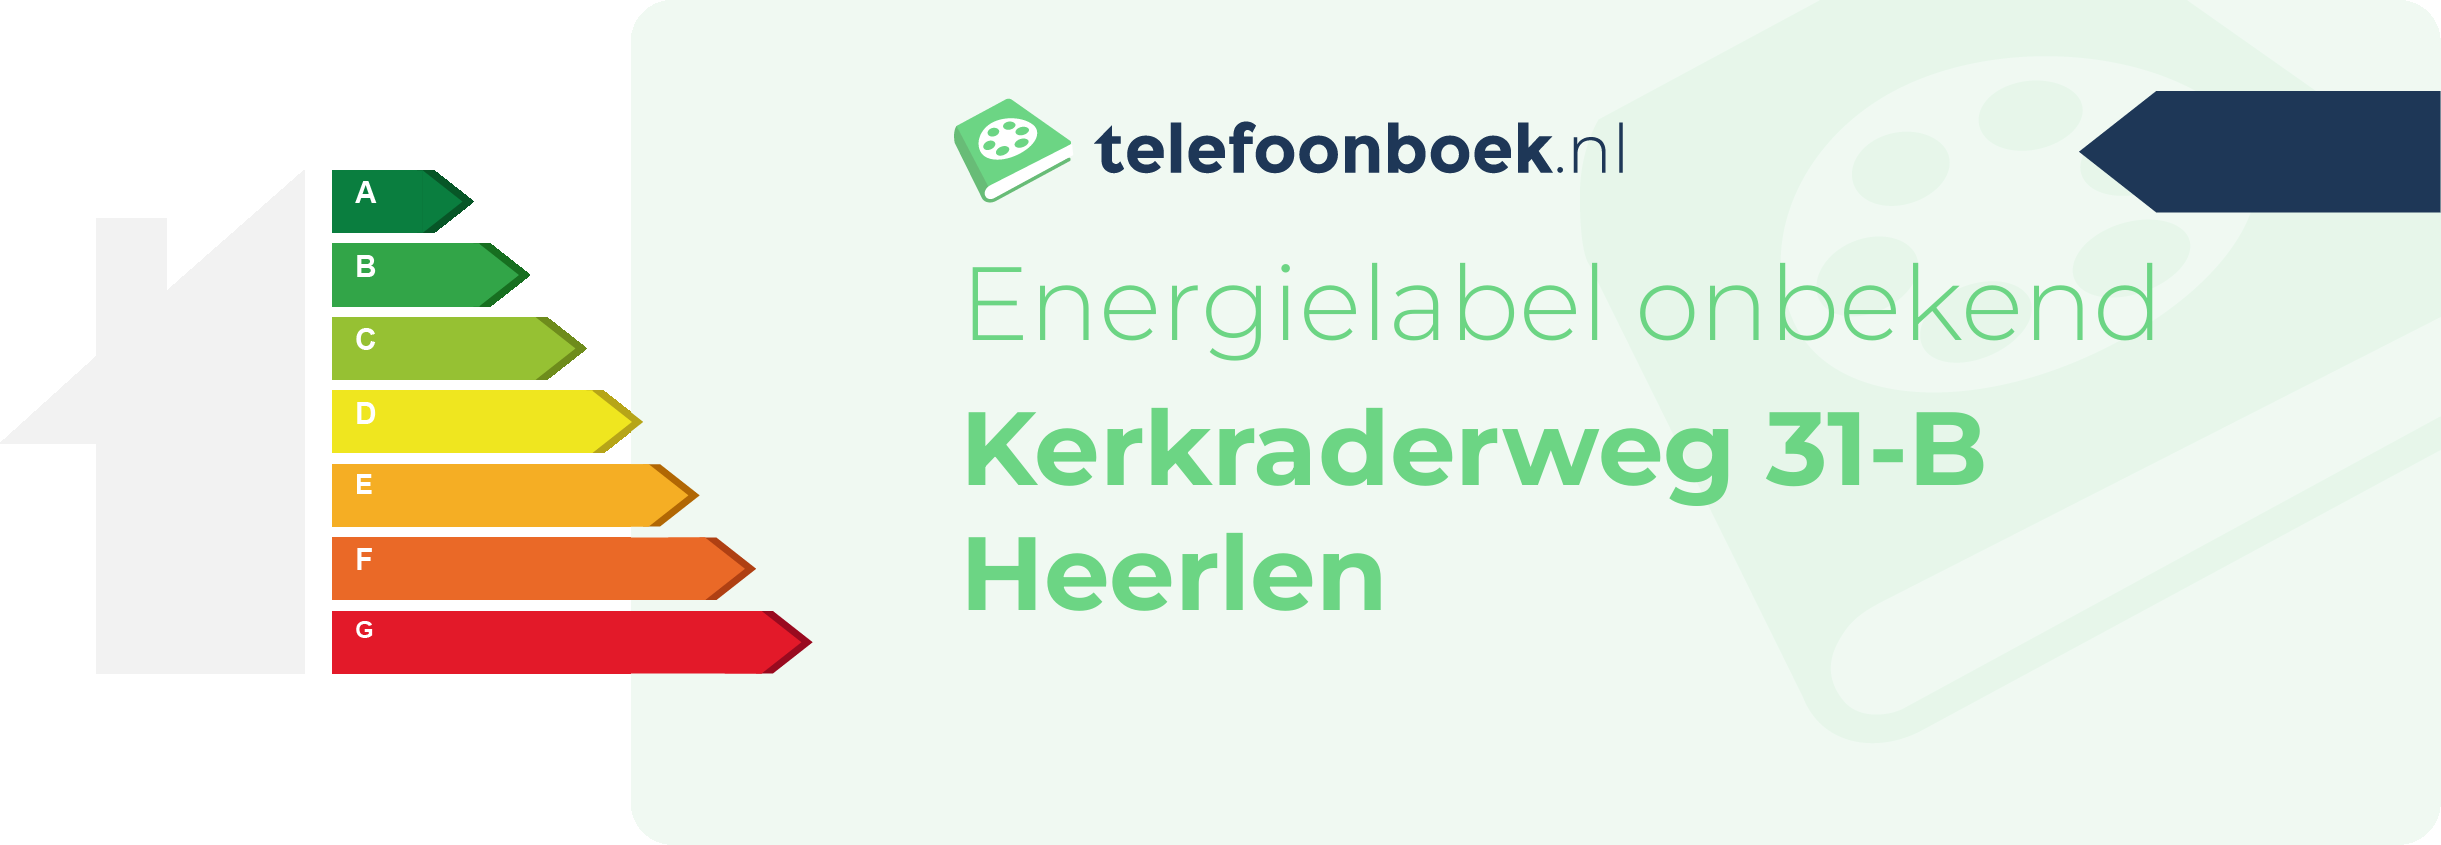 Energielabel Kerkraderweg 31-B Heerlen